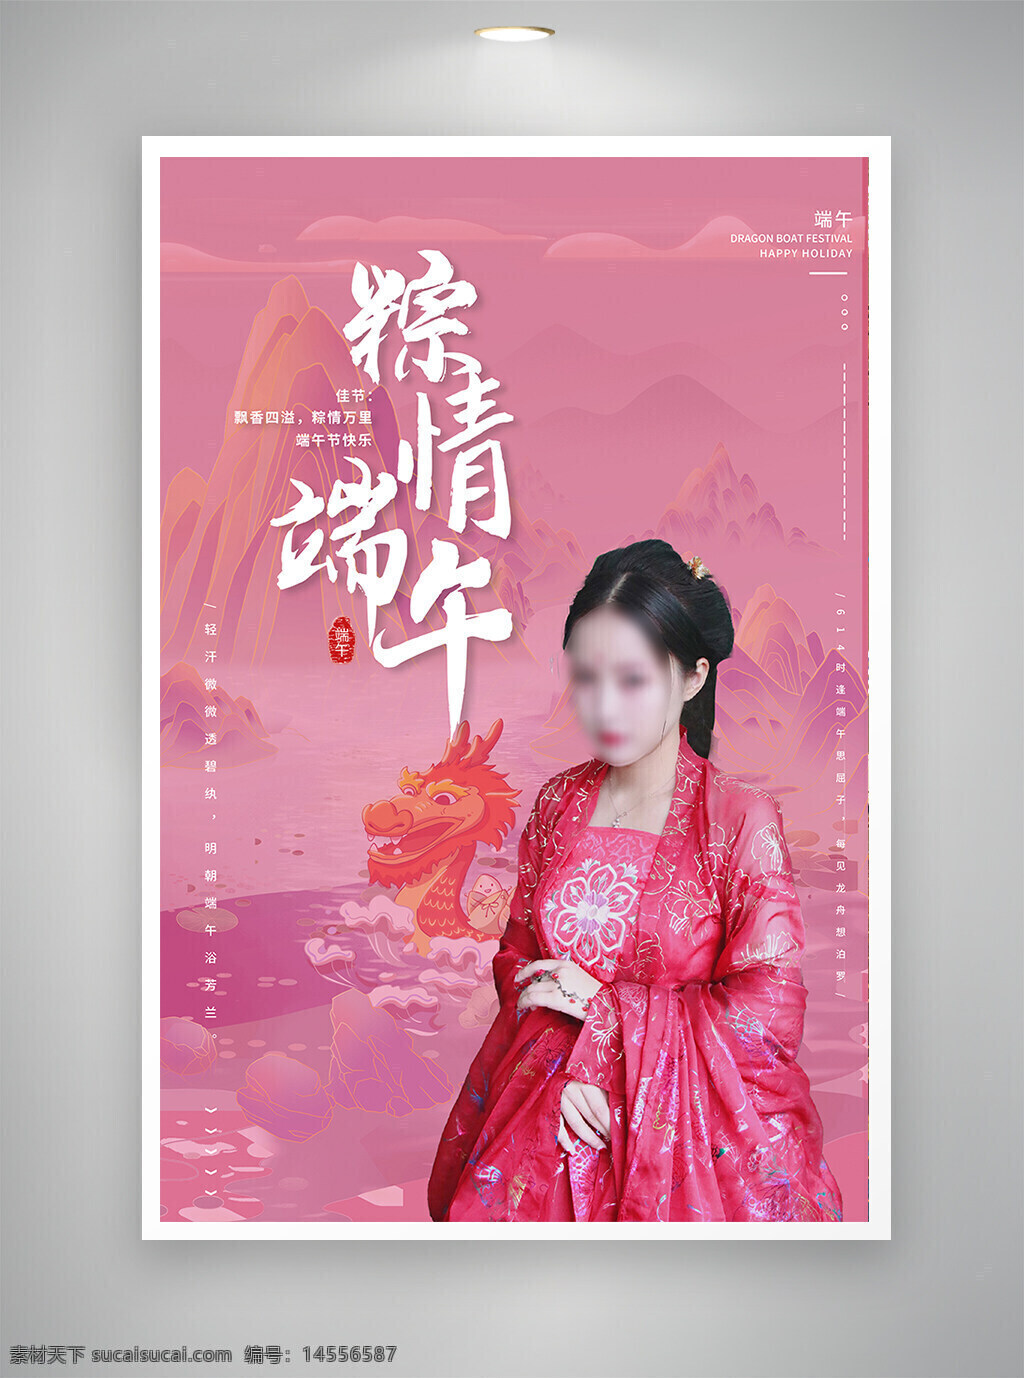 中国风海报 古风海报 促销海报 节日海报 端午节